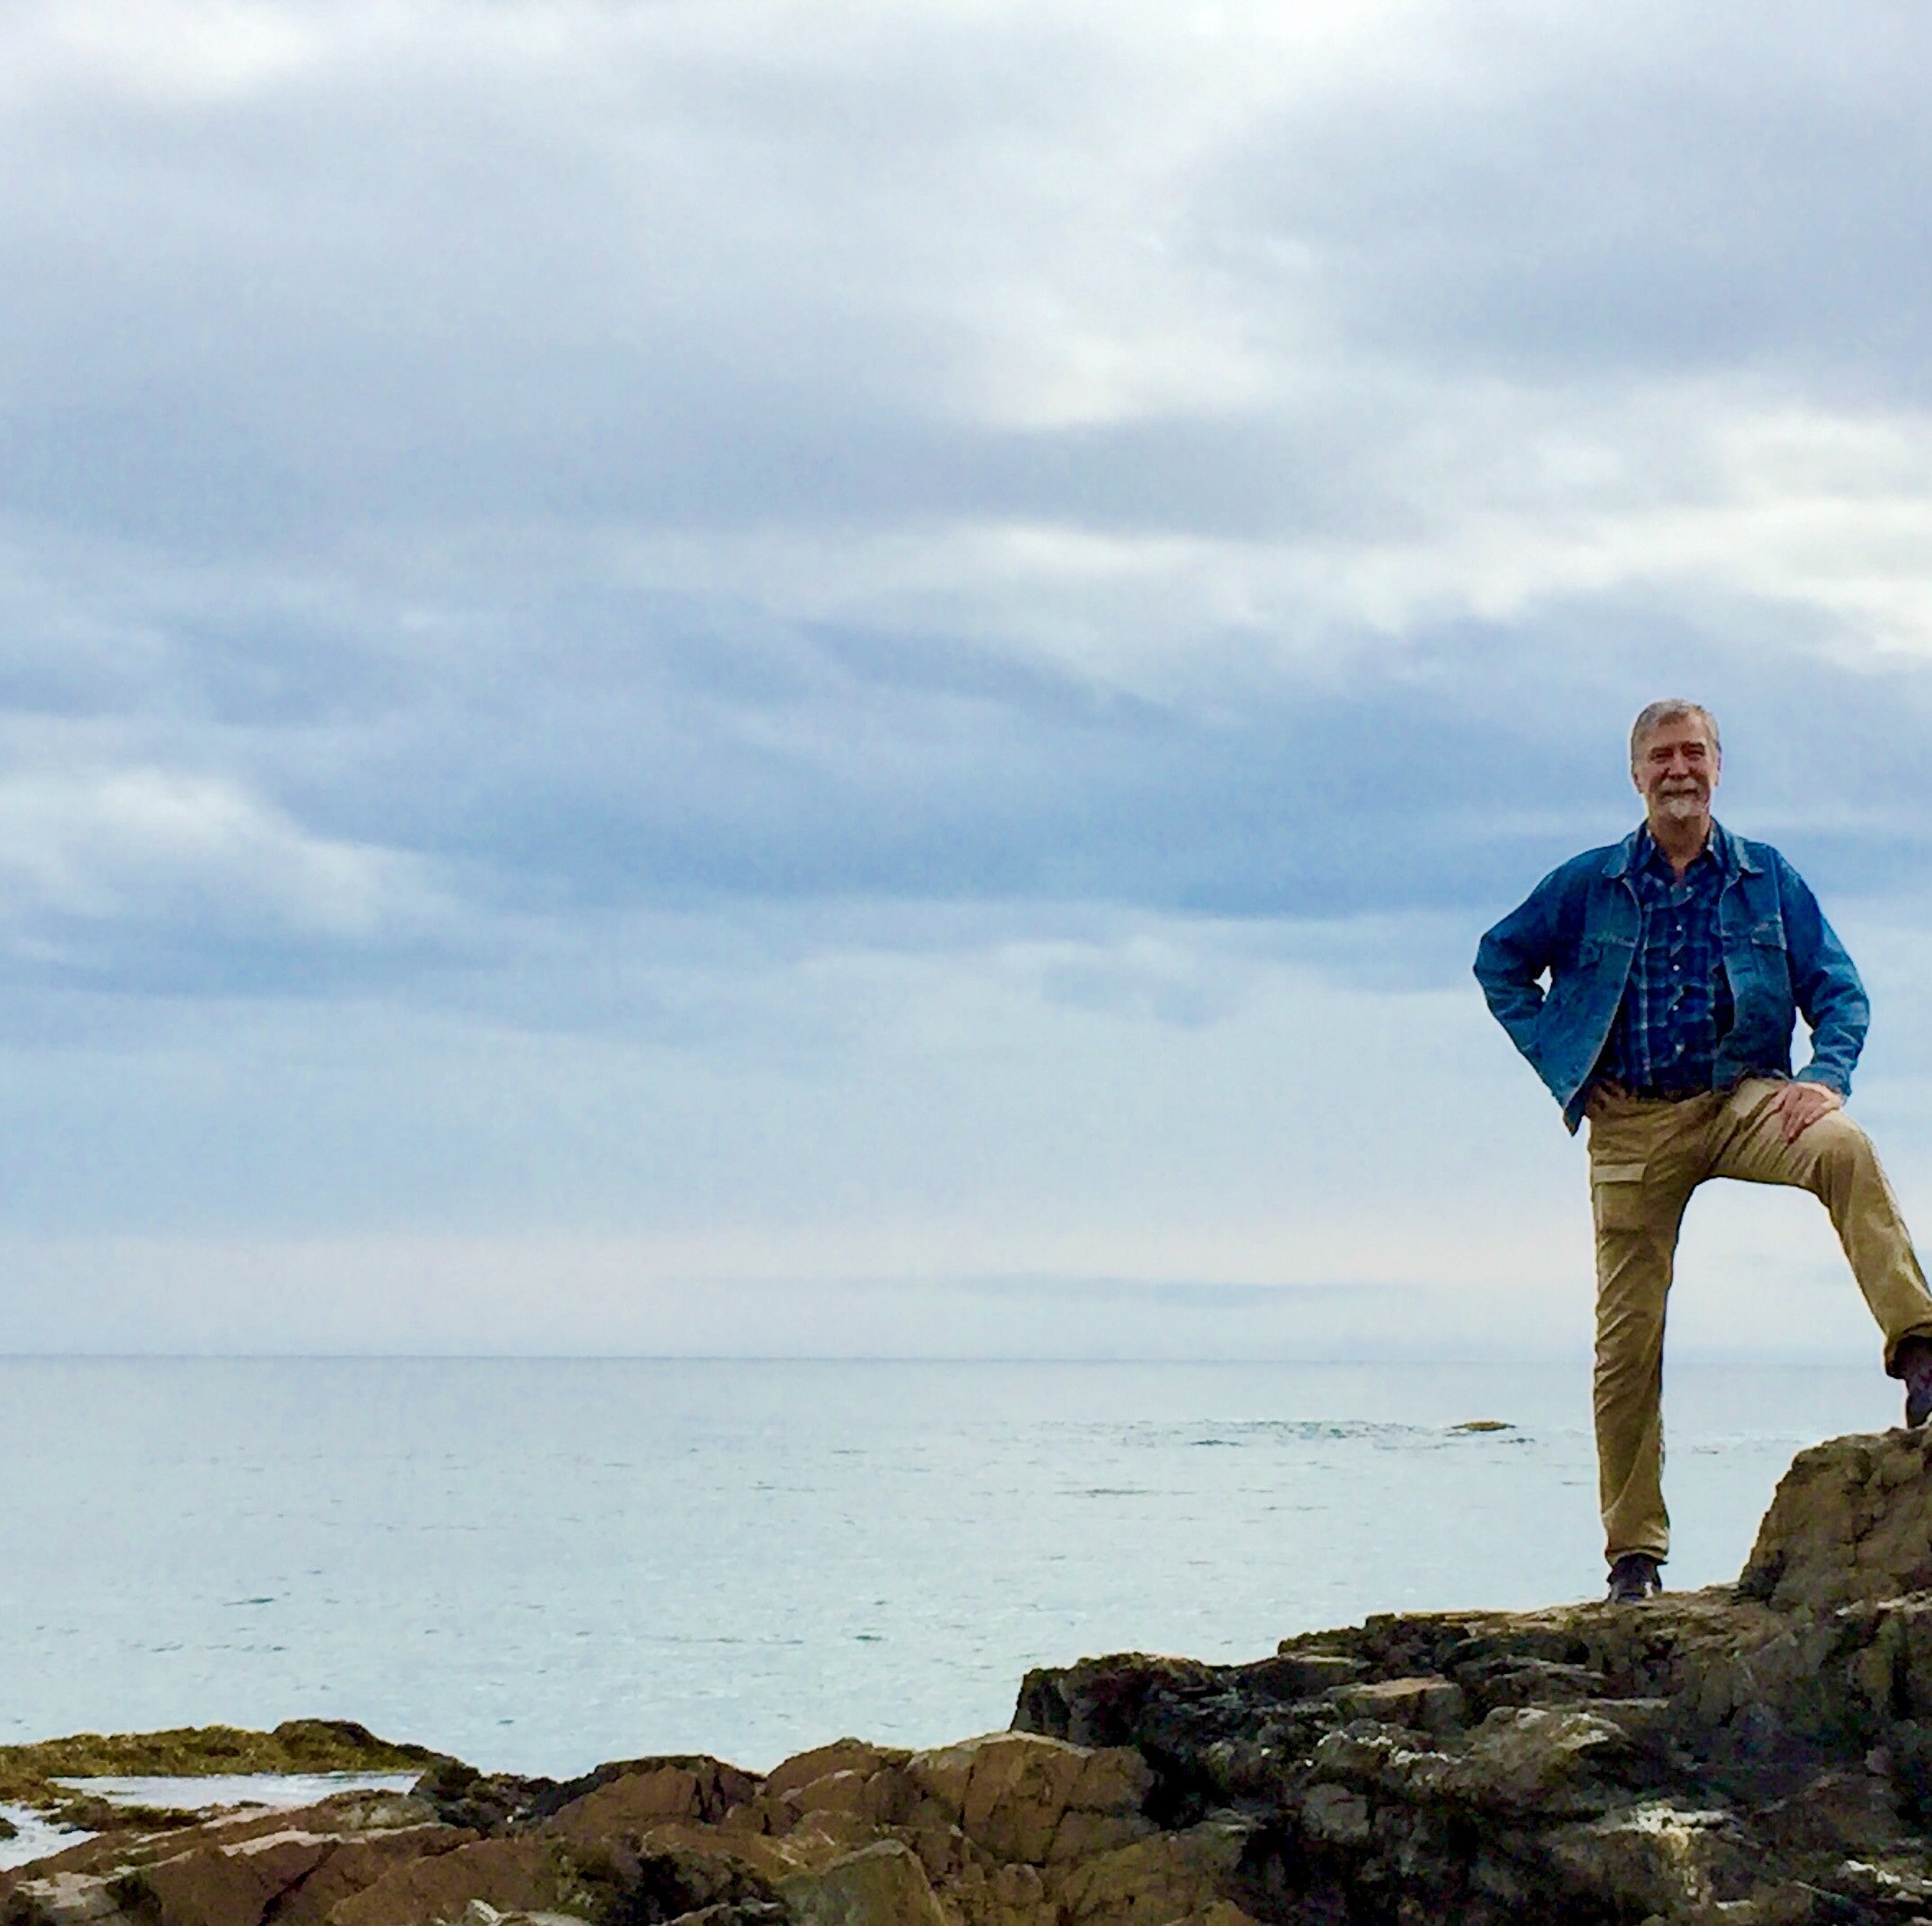 Andy, standing astride rocky shoreline, Captain Morgan(ish) pose.